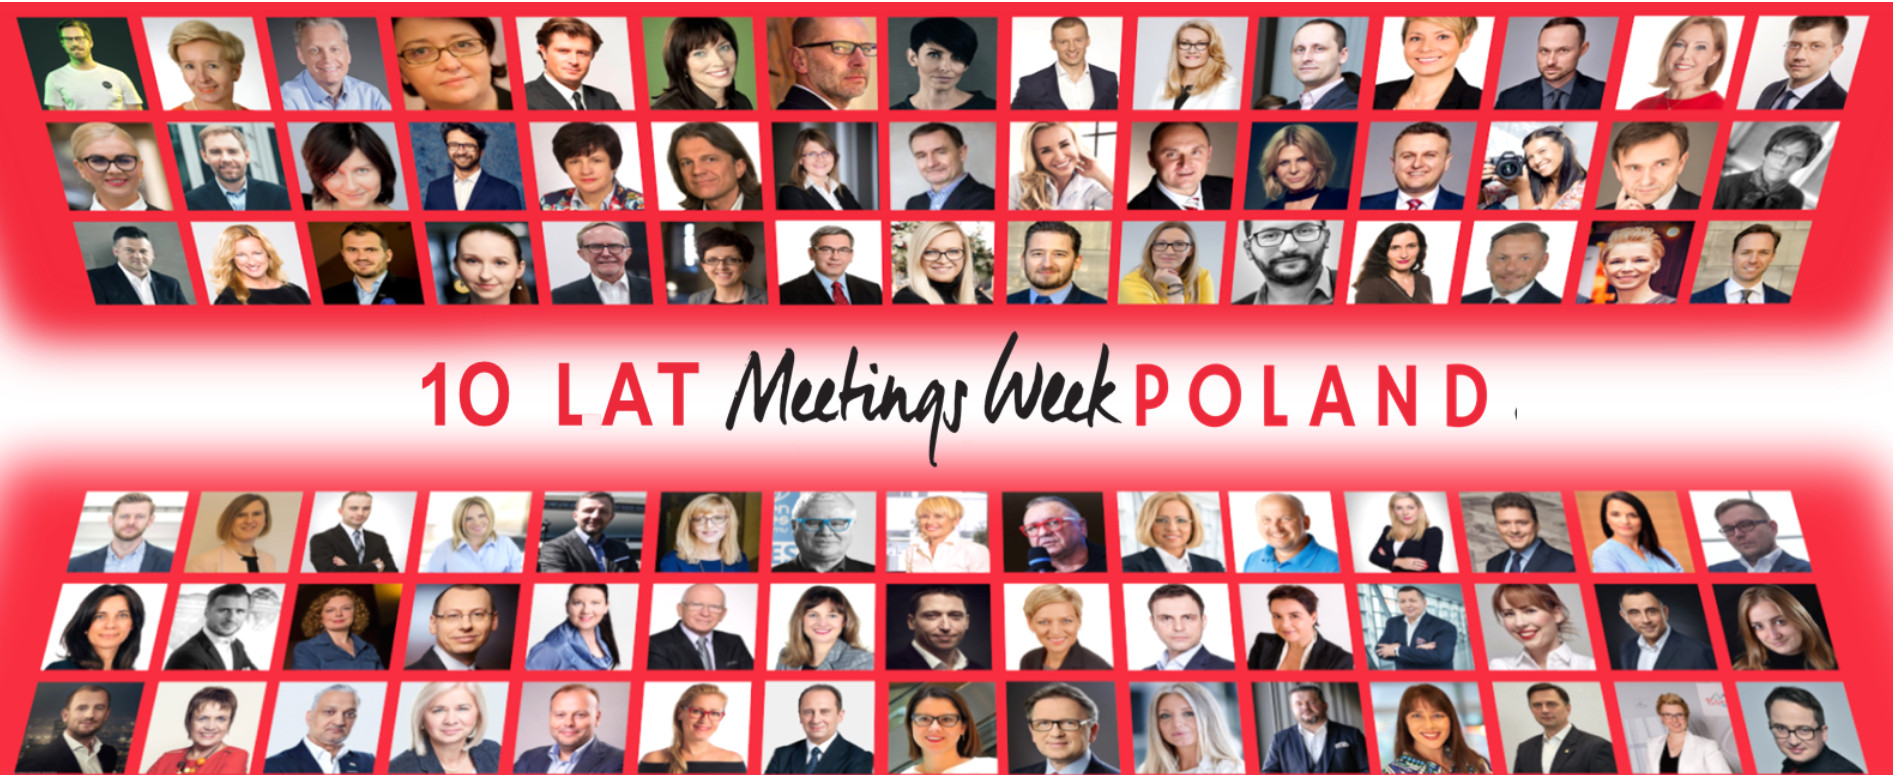 10E EDITIE VAN MEETINGS WEEK POLAND